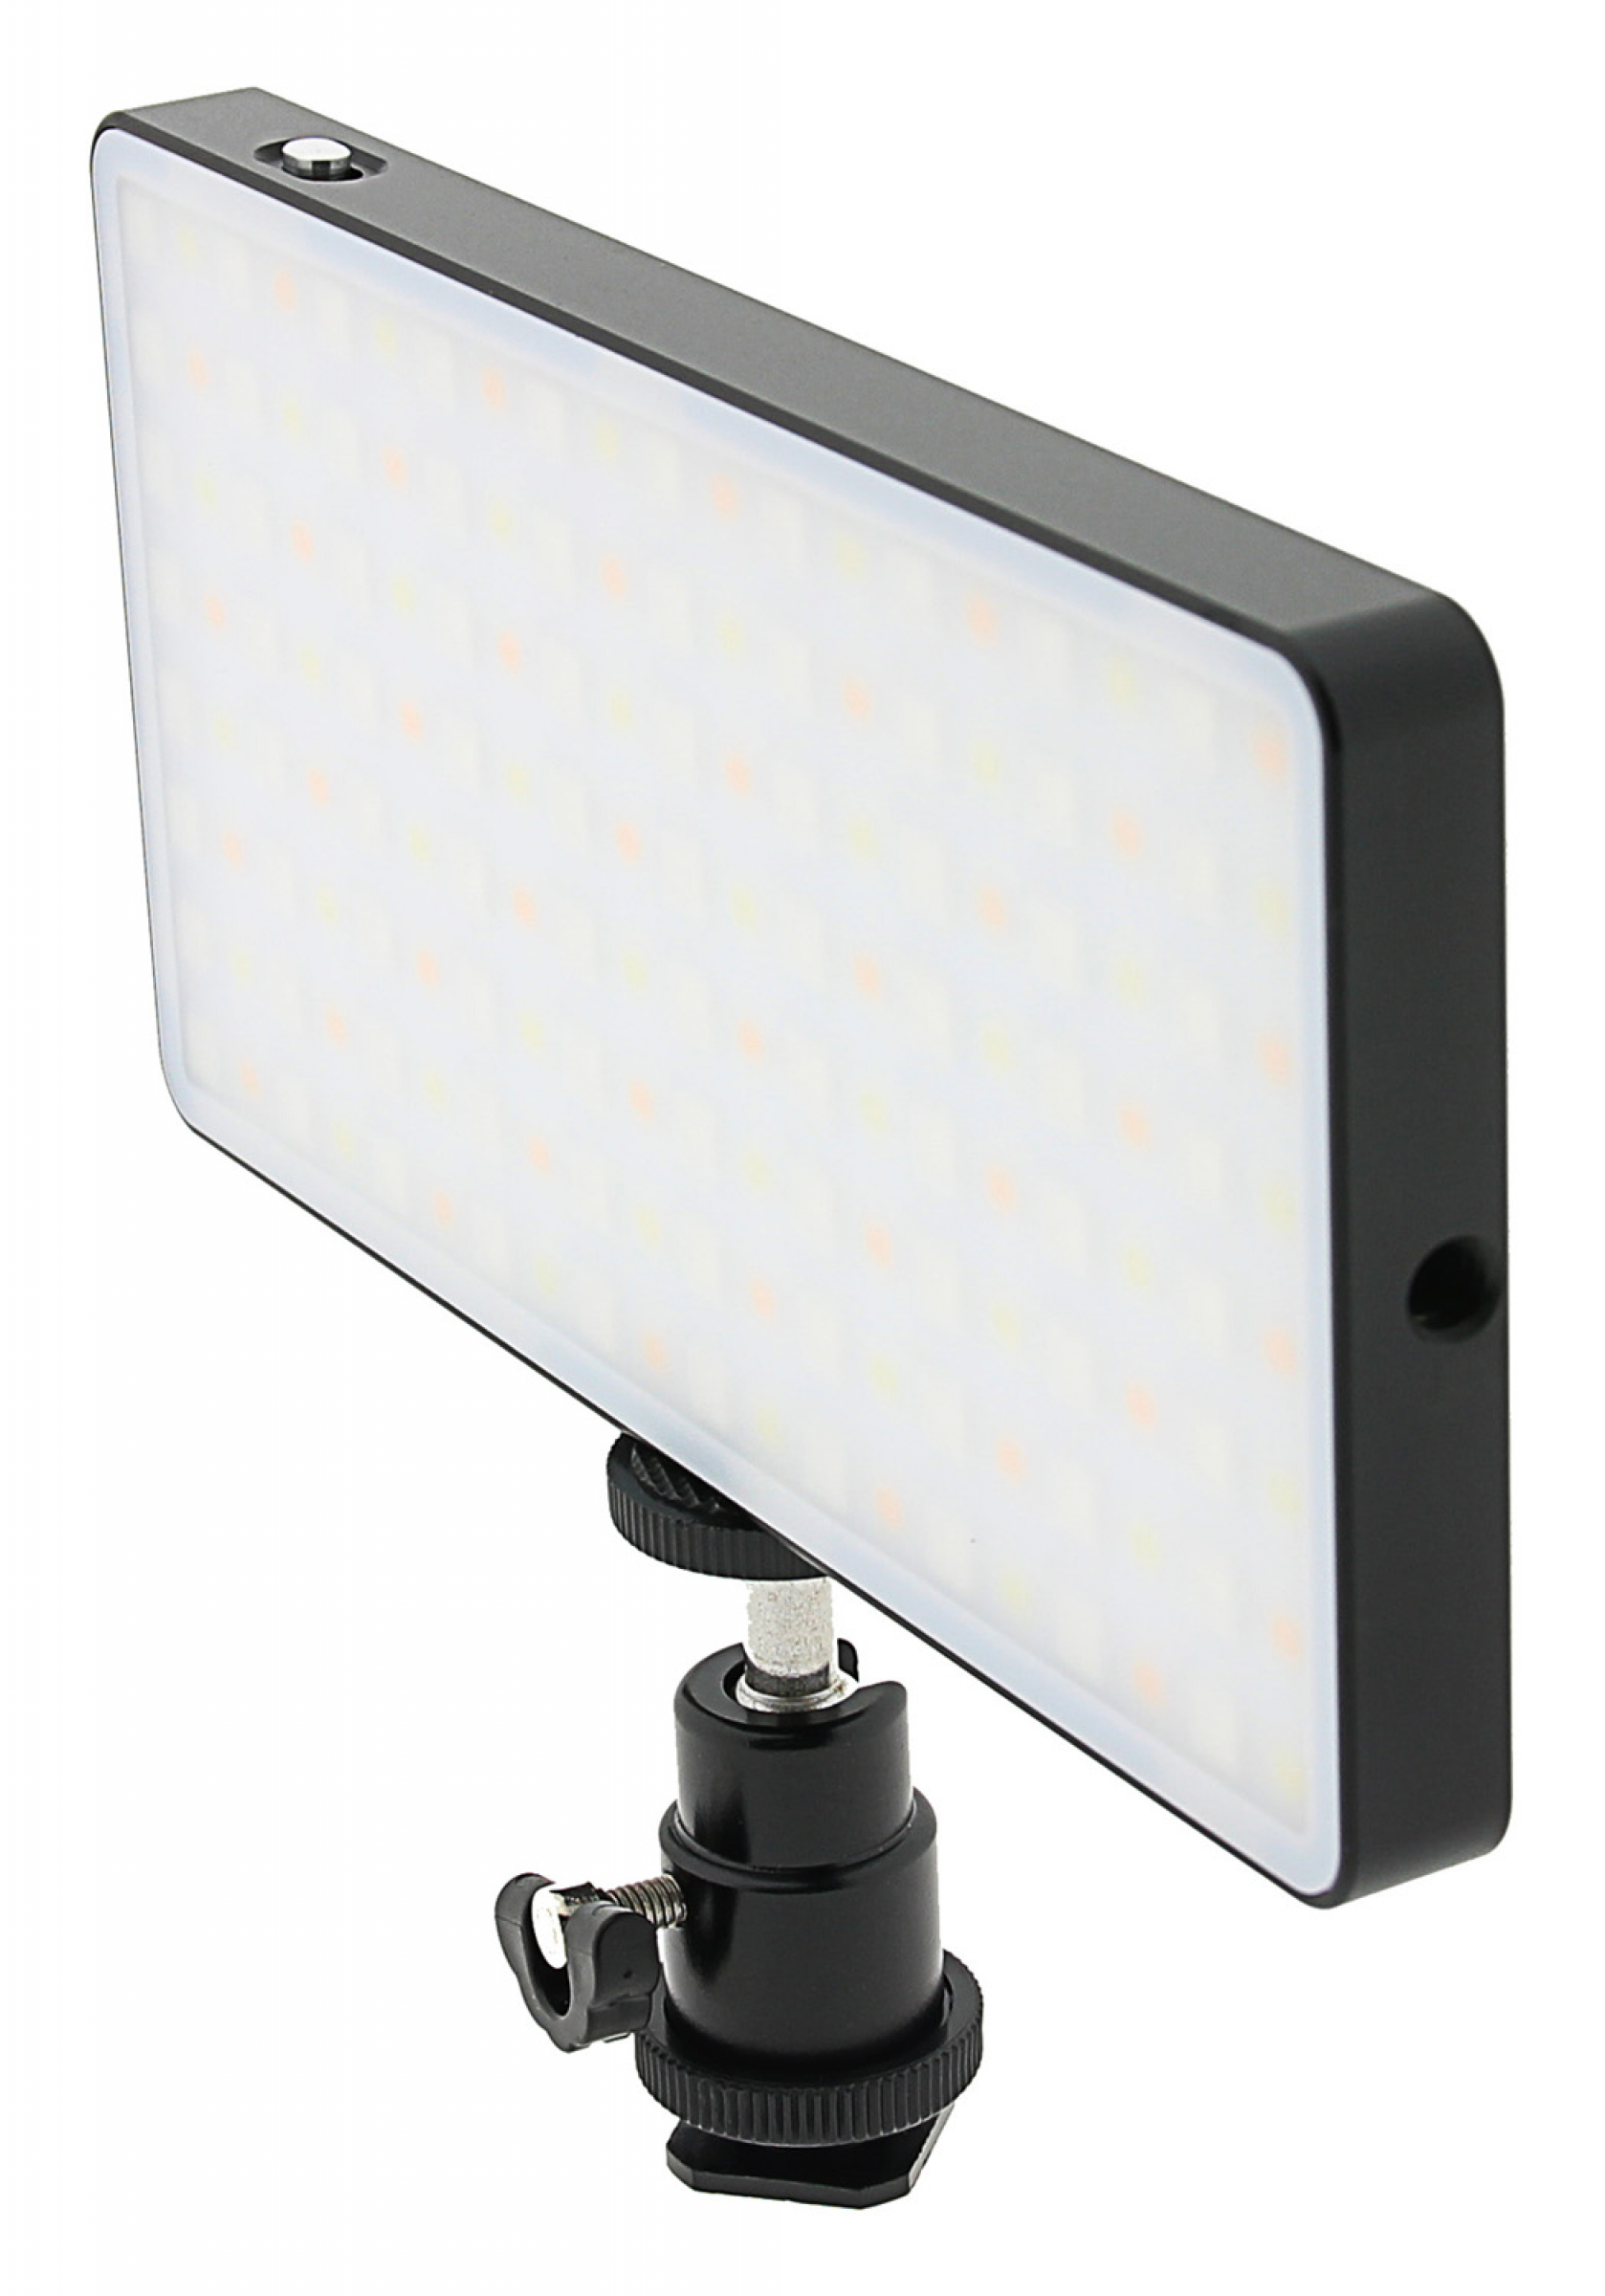 VTPro LED Foto und Videolicht mit 160 einstellbaren RGB LEDs und 3 Szenen